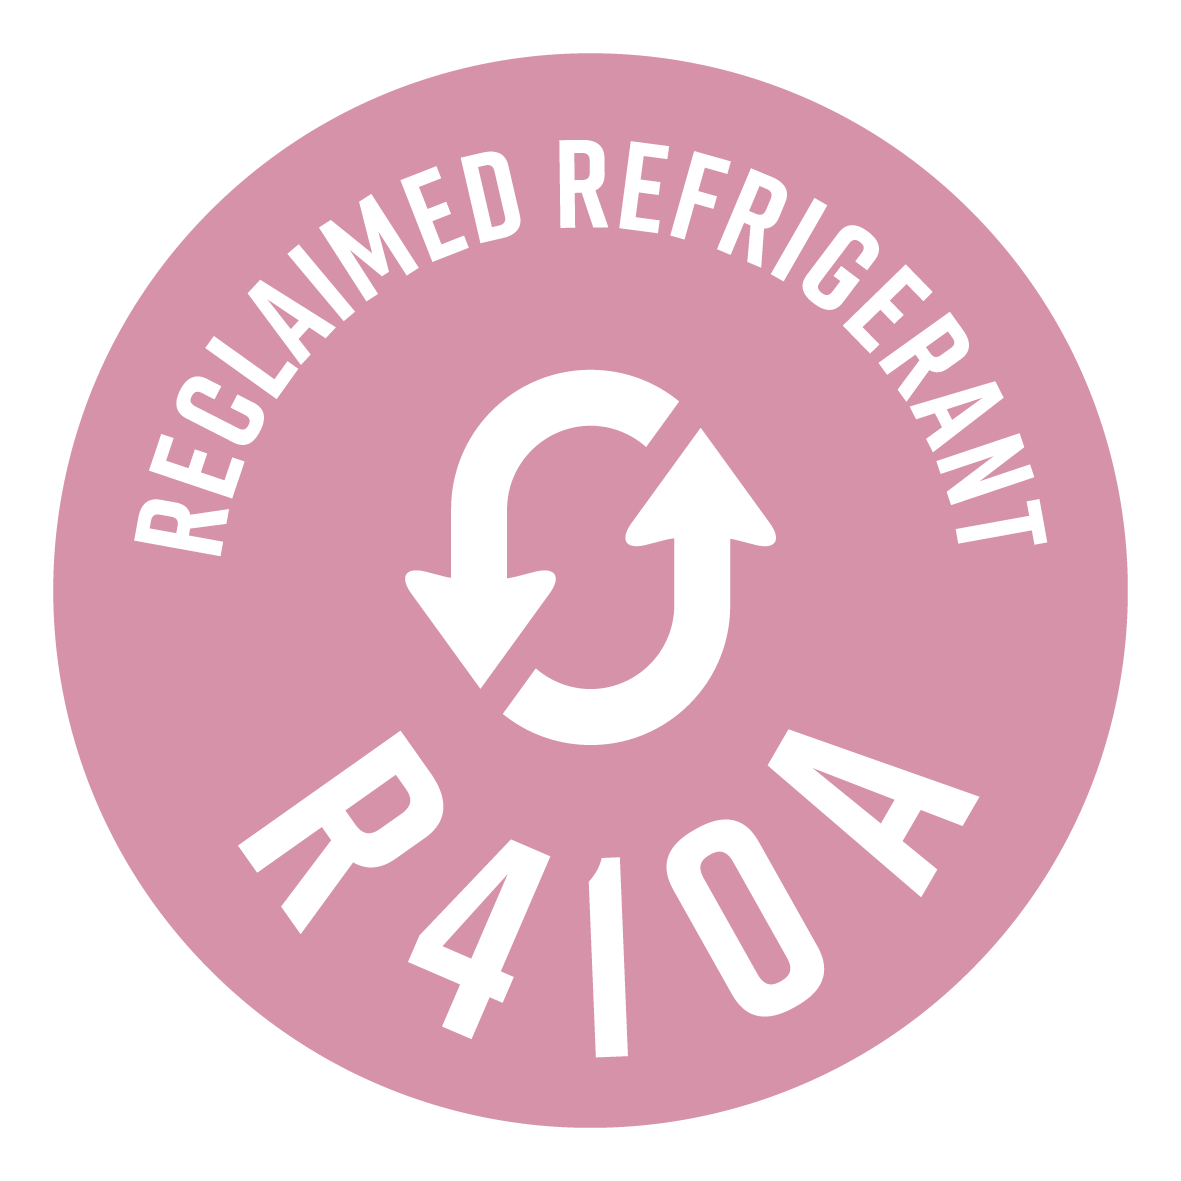 Χρησιμοποιεί μόνο ανακυκλωμένο R410A: ένα ψυκτικό ίδιο με το αρχικό, το οποίο όμως ανακτάται από τις υπάρχουσες εγκαταστάσεις. Για μια οικονομία όλο και πιο κυκλική